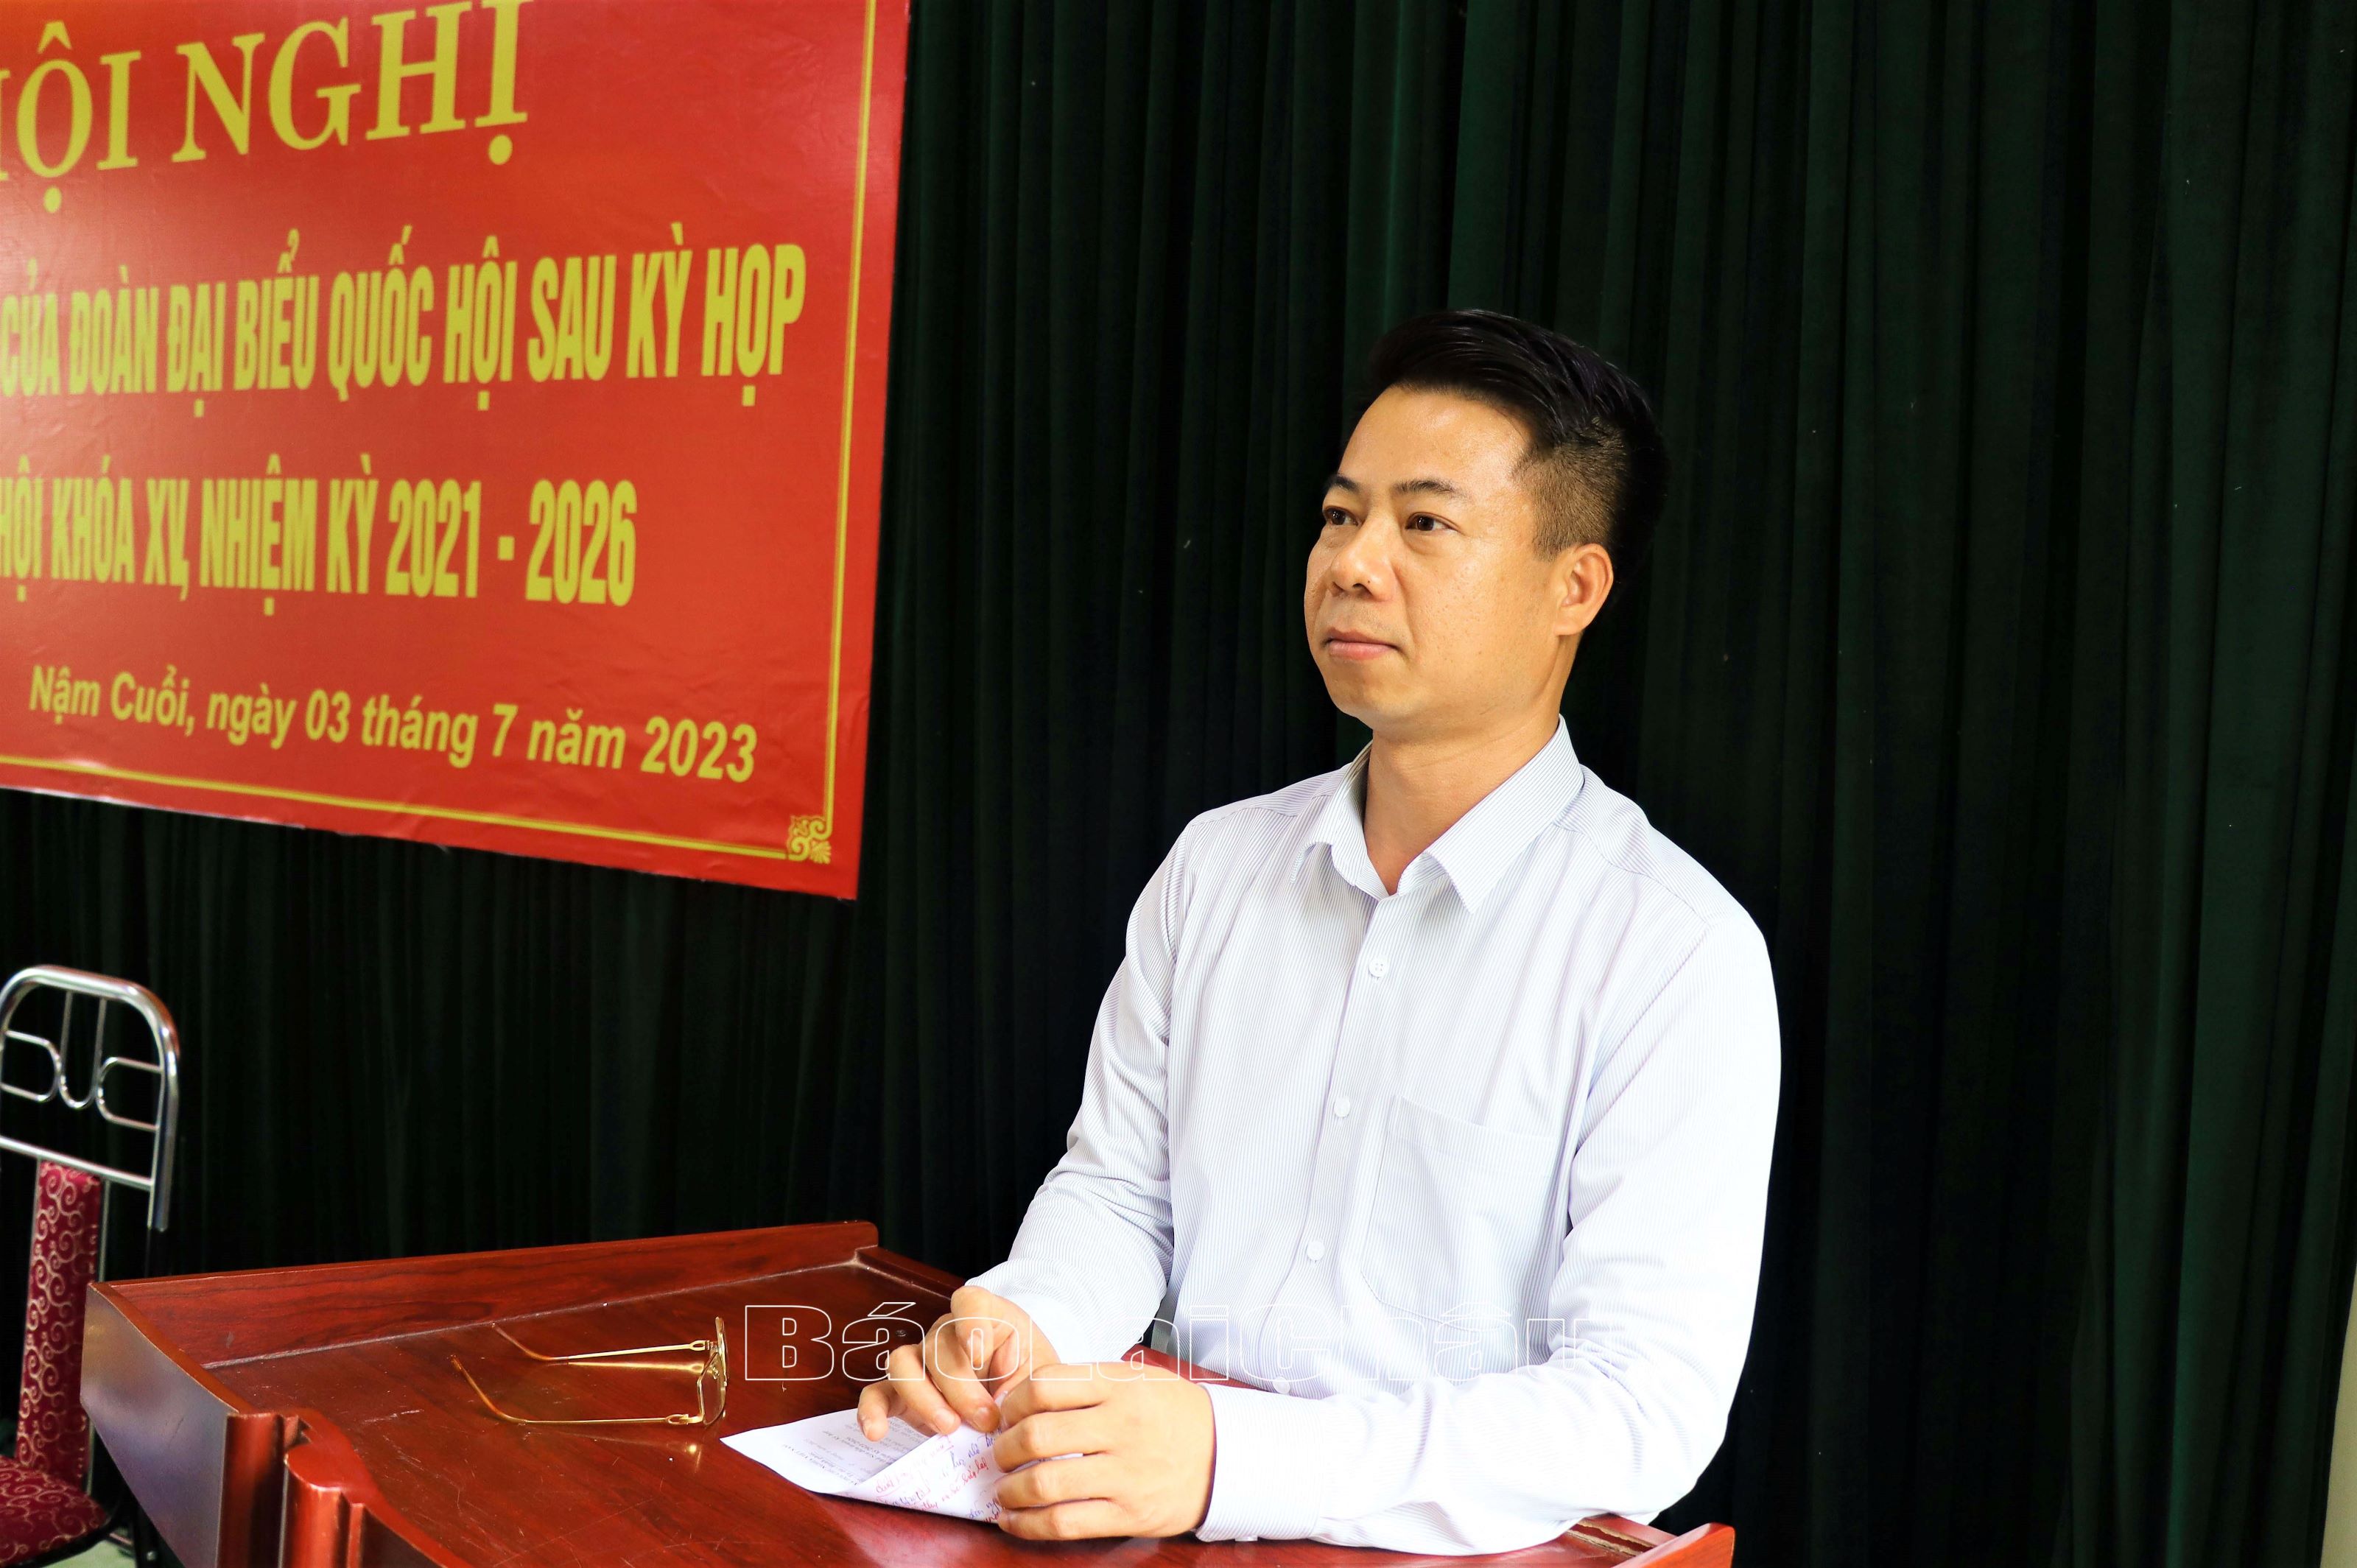 Đồng chí Hoàng Quốc Khánh, Phó trưởng Đoàn chuyên trách Đoàn ĐBQH tỉnh trả lời ý kiến cử tri.